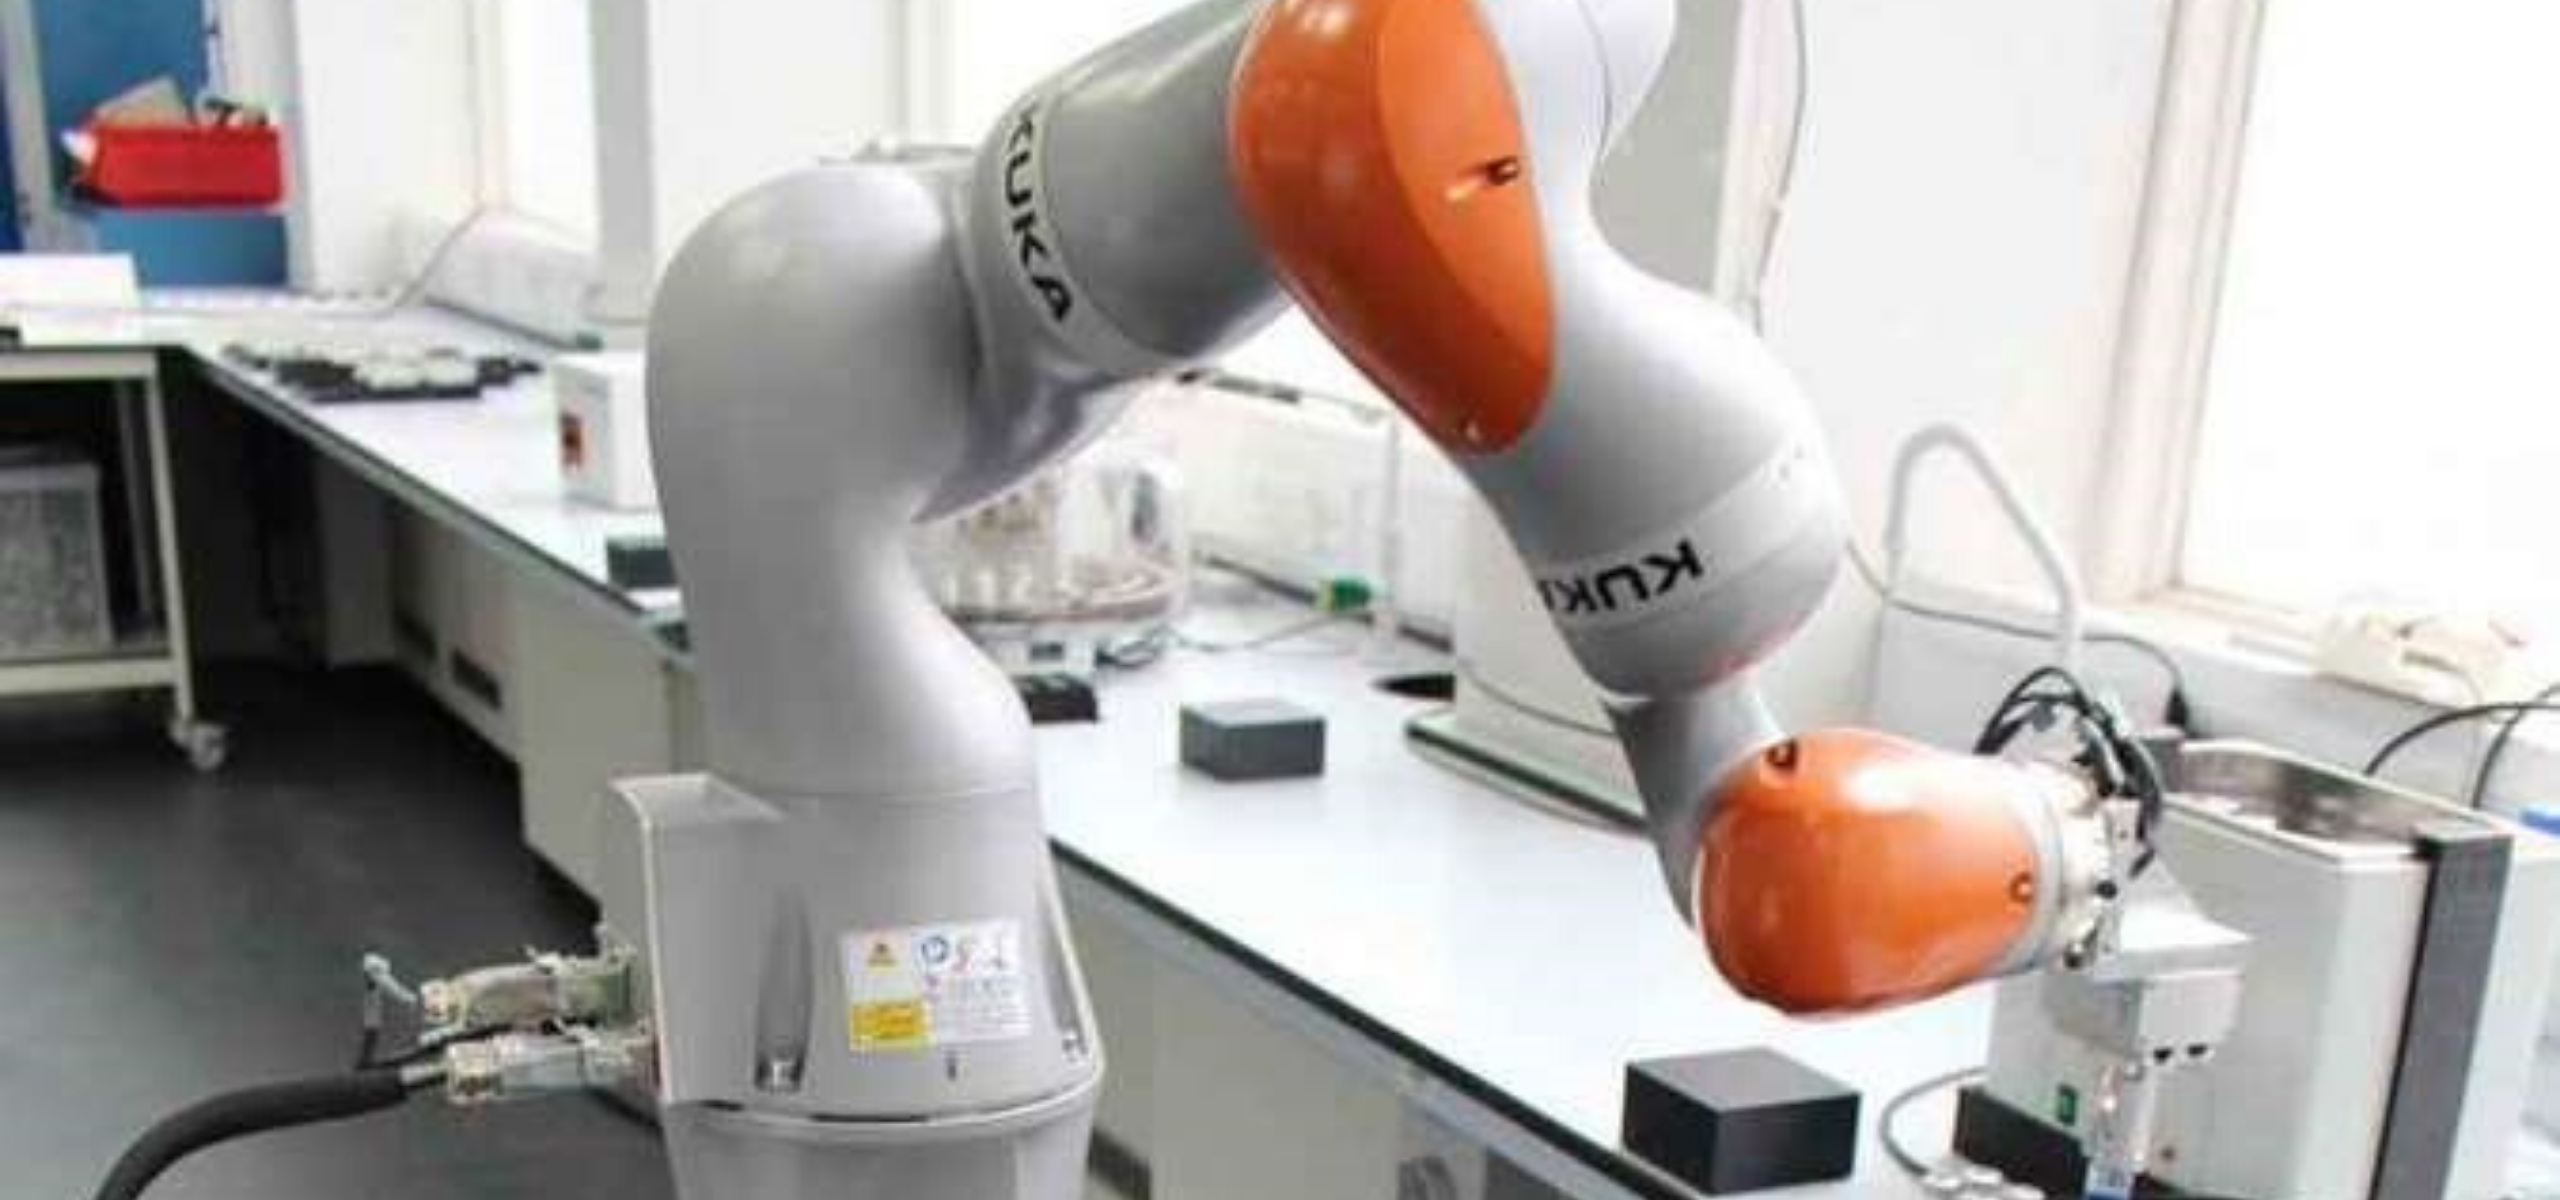 Um robô cientista: protótipo inglês pode ajudar o trabalho em laboratórios